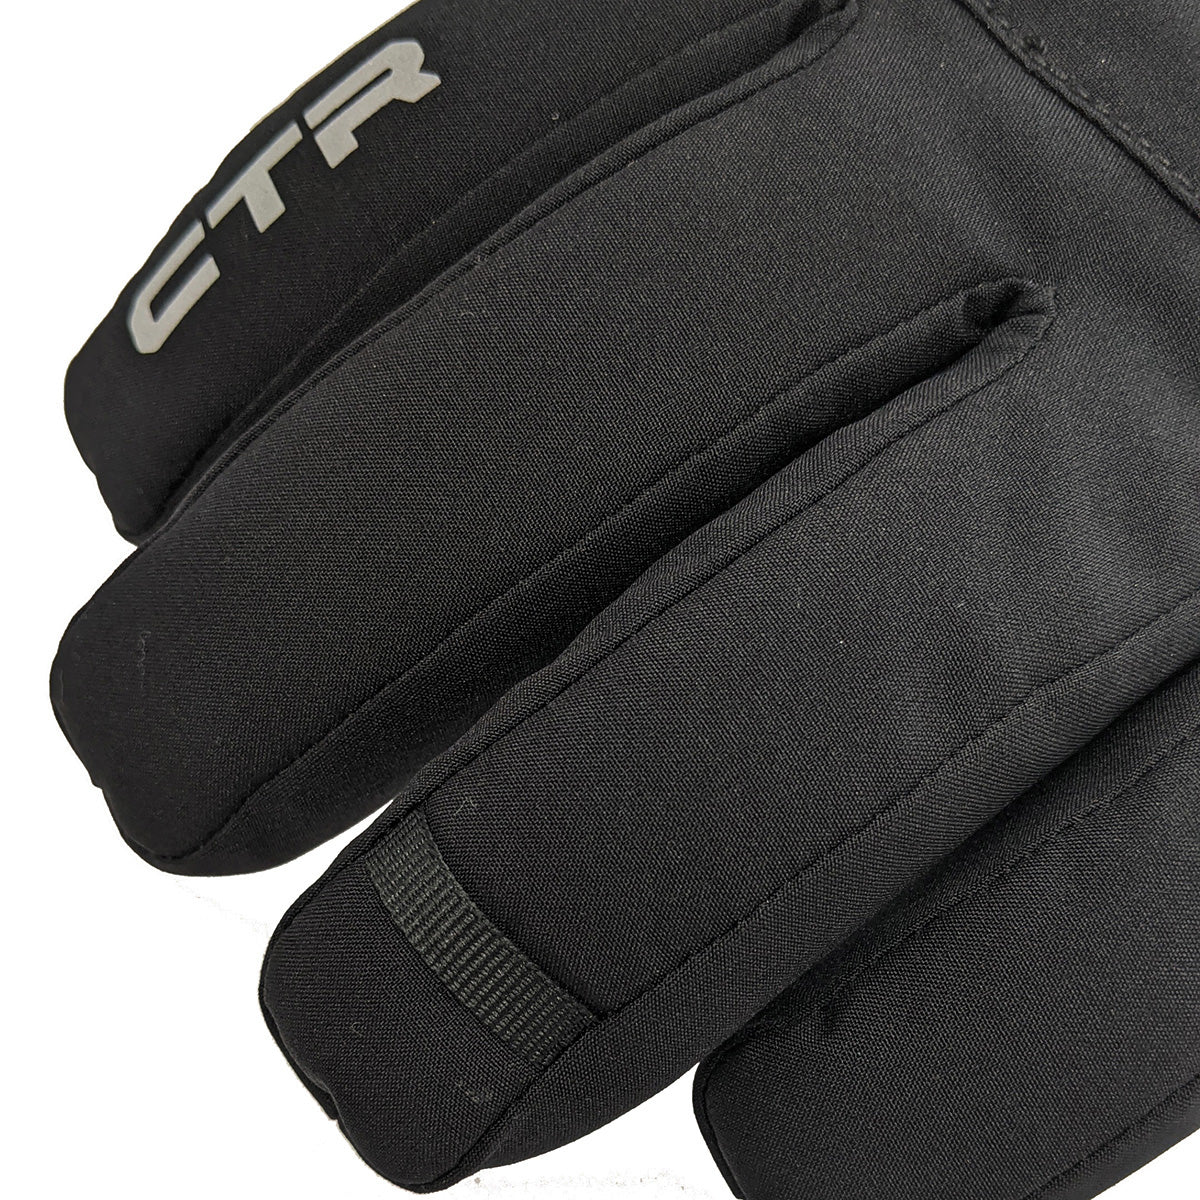 Style de gants de ski CTR Plus : 1510